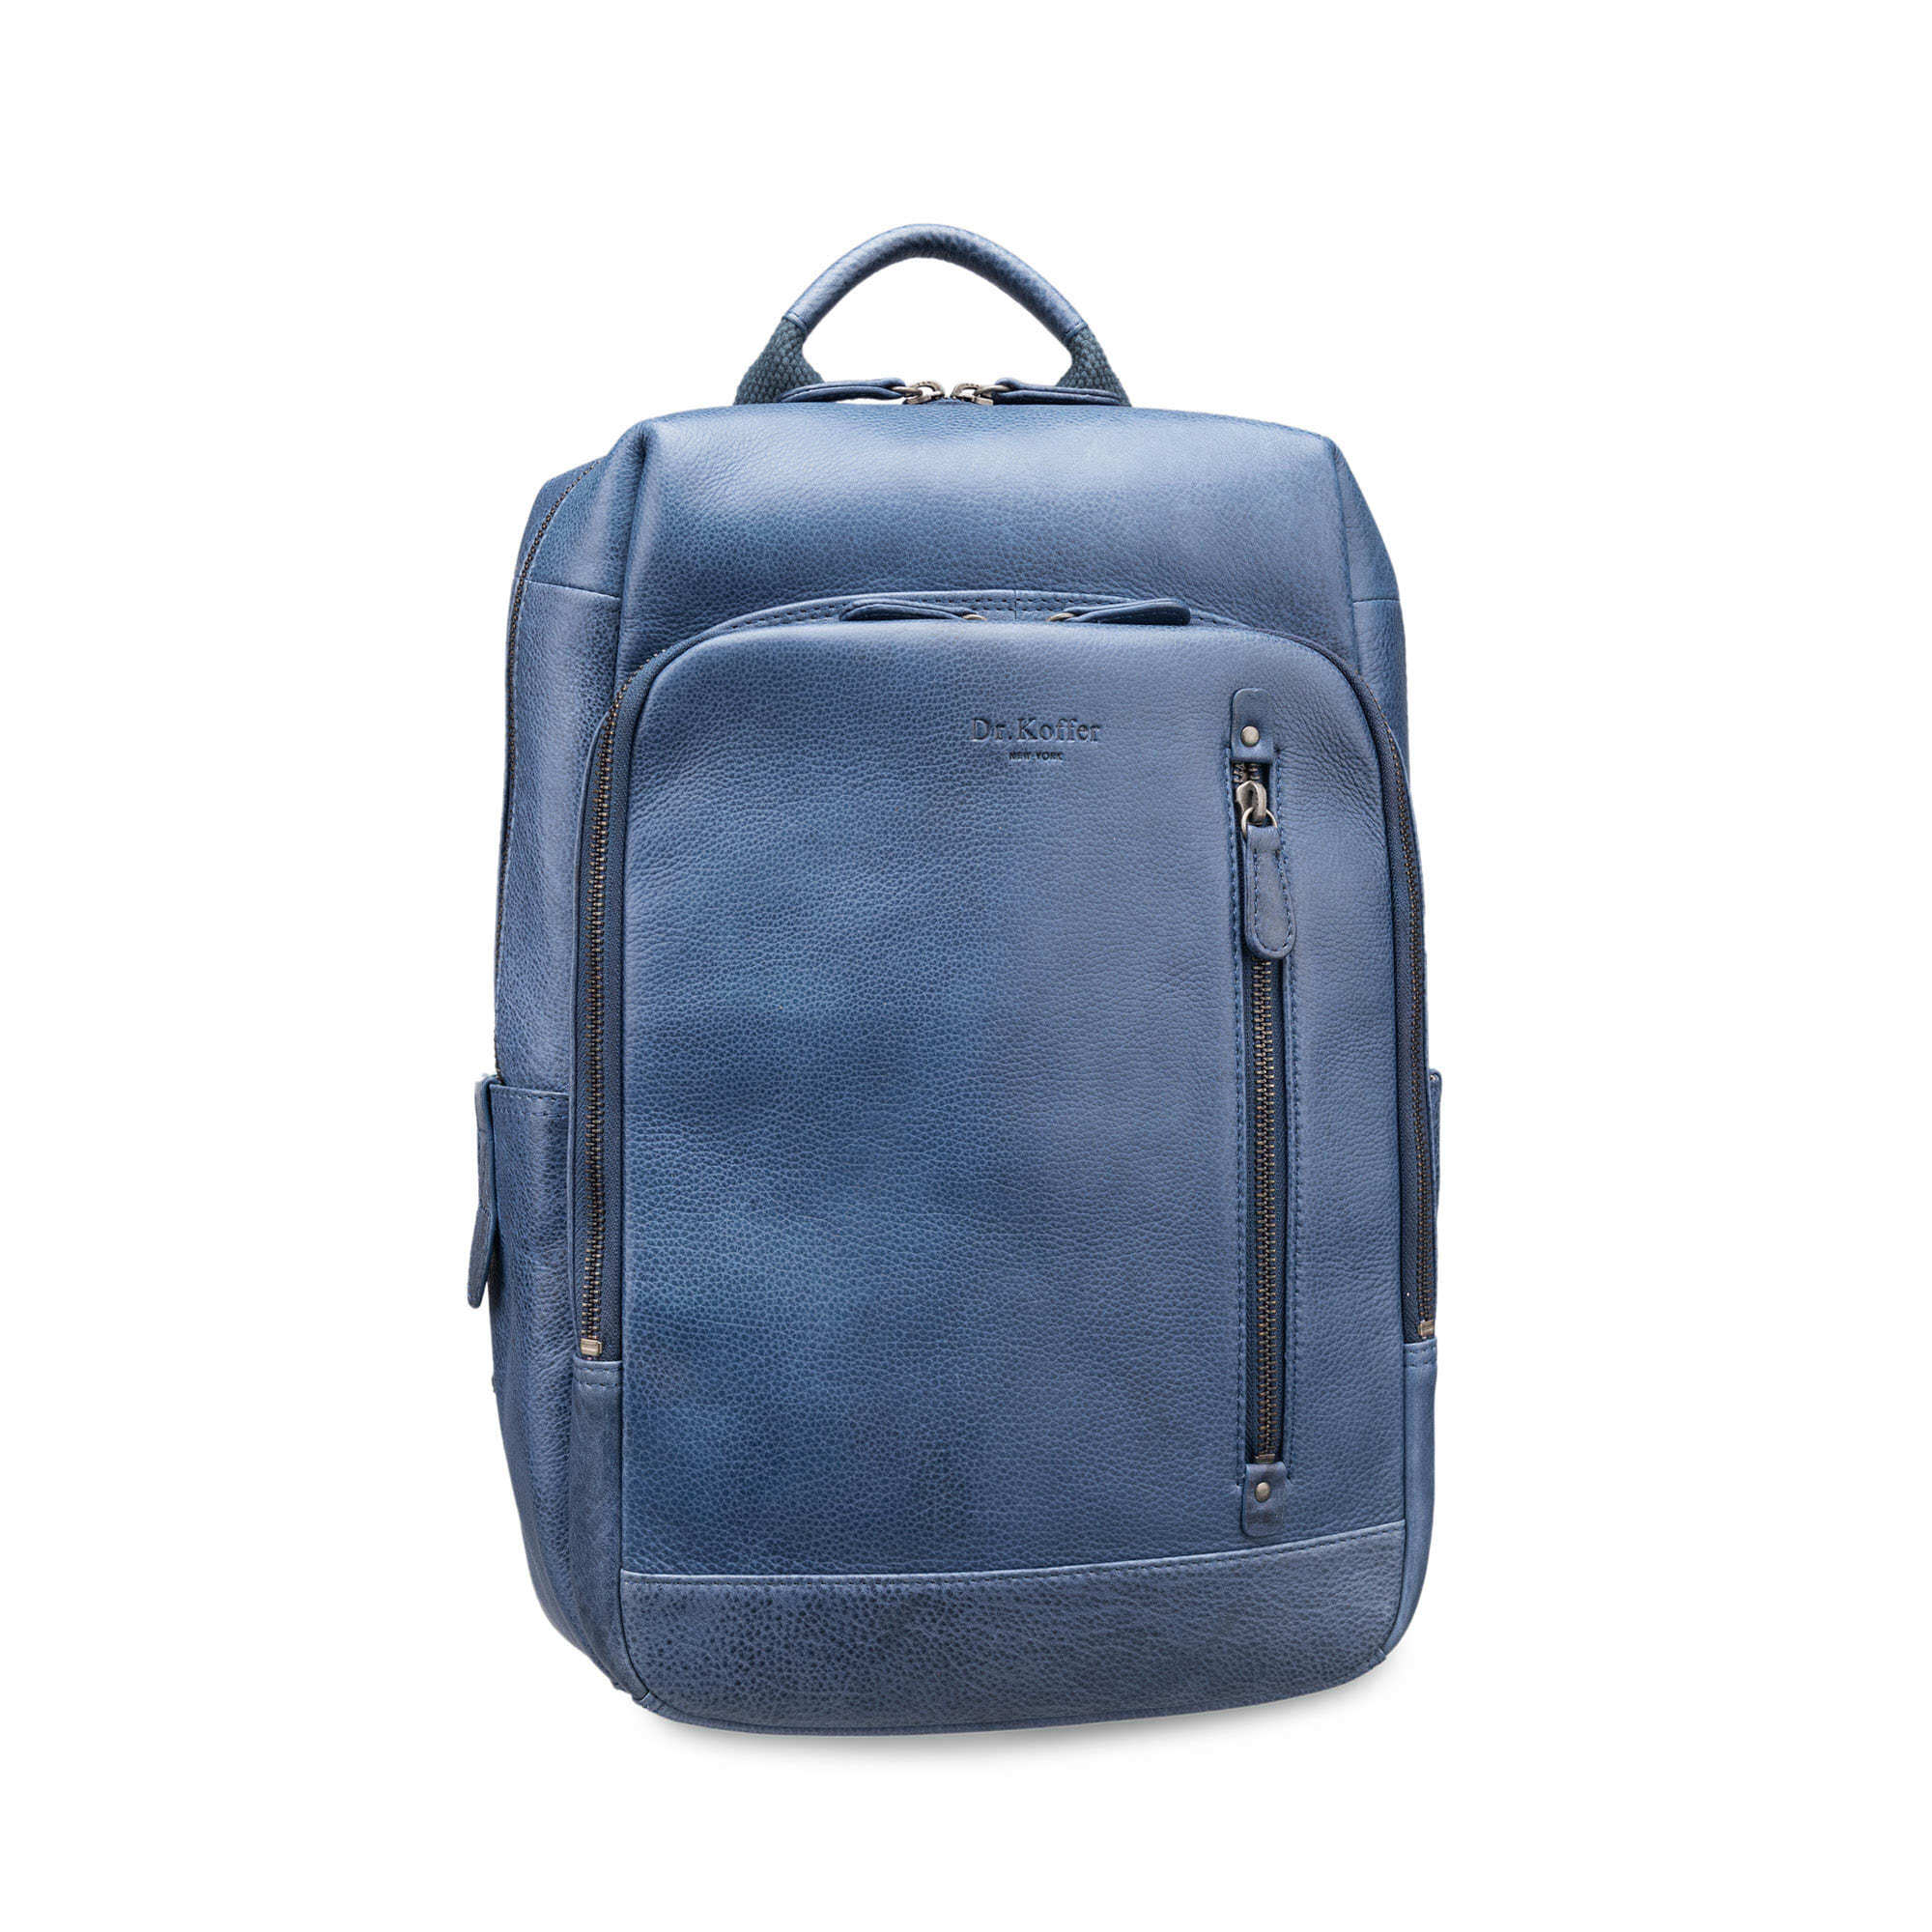 Др.Коффер B402691-154-60 рюкзак, цвет синий - фото 1